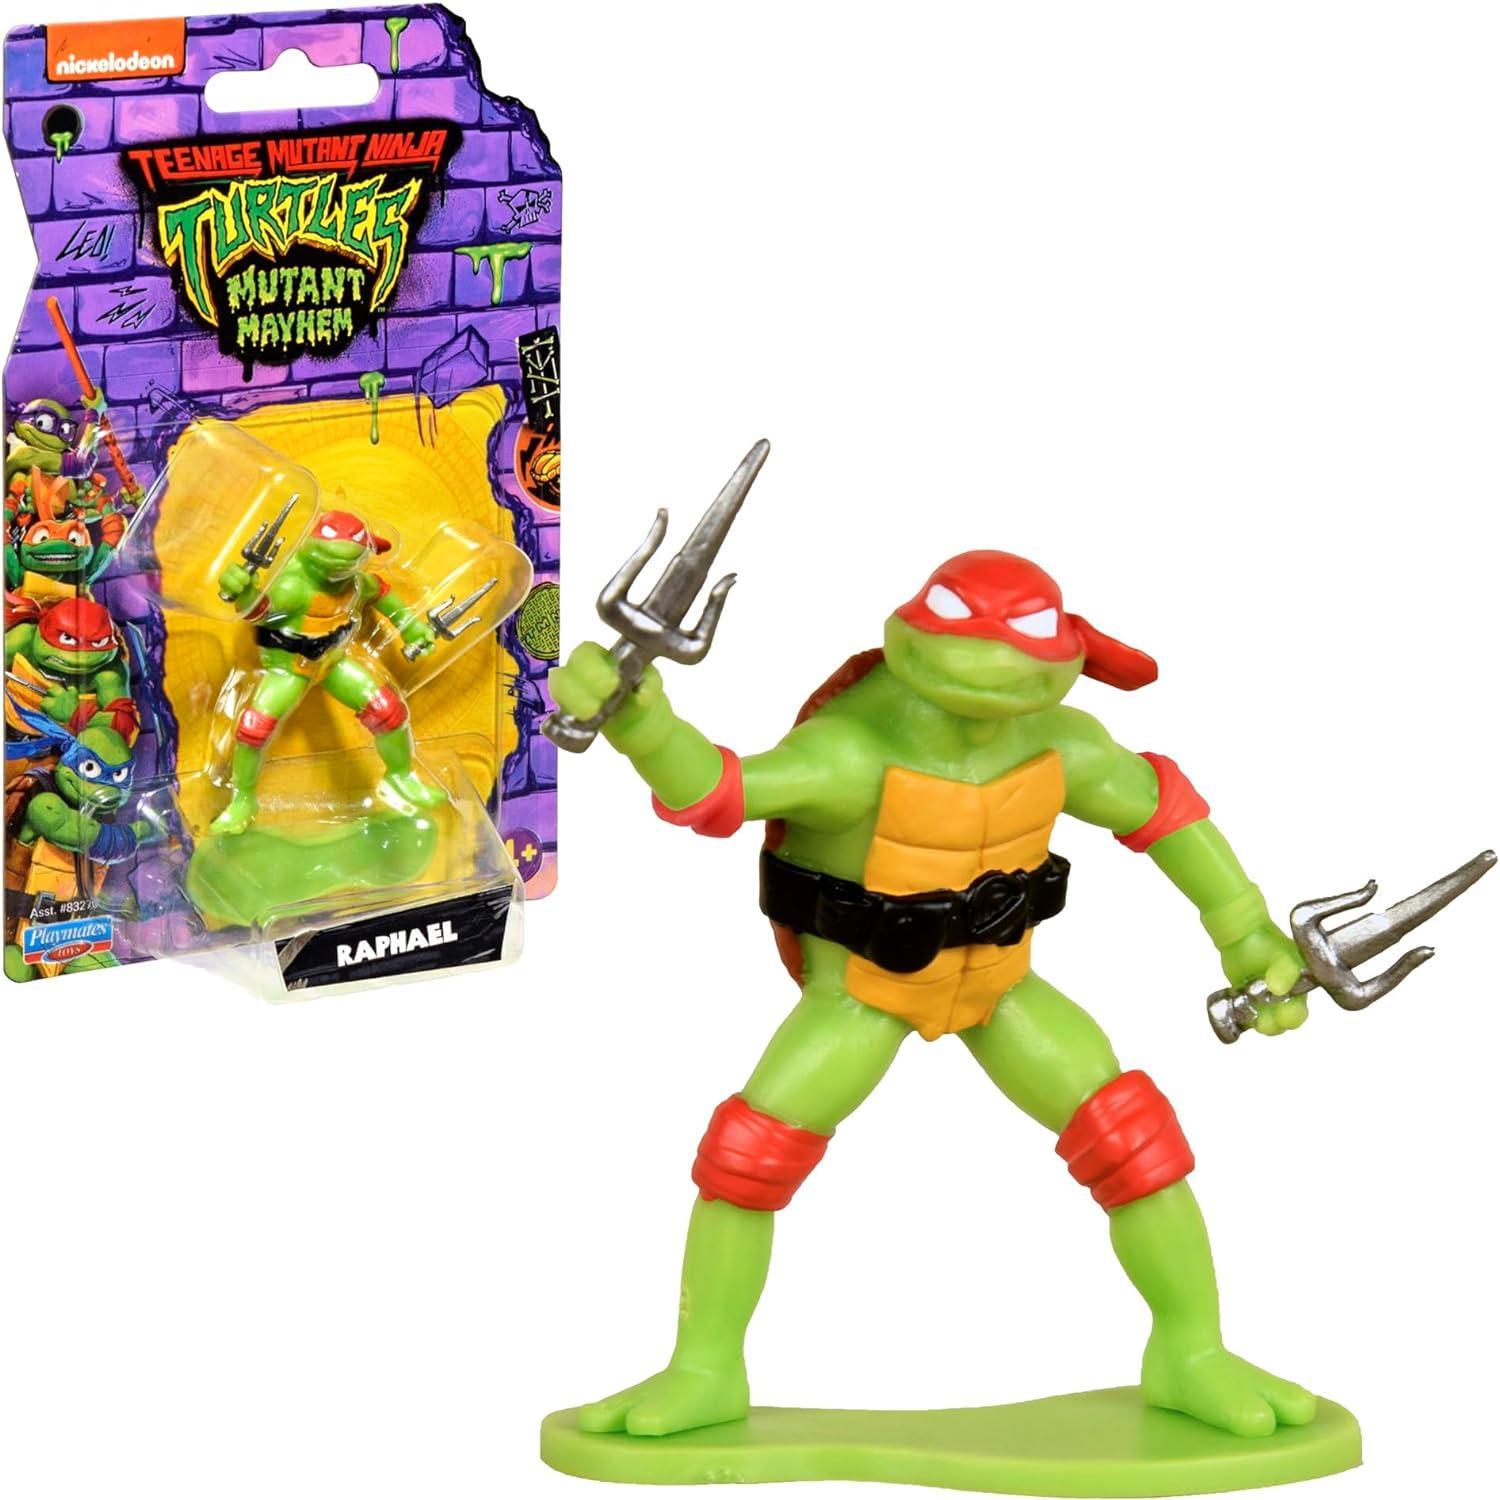 giochi preziosi italia turtles movie mini personaggi